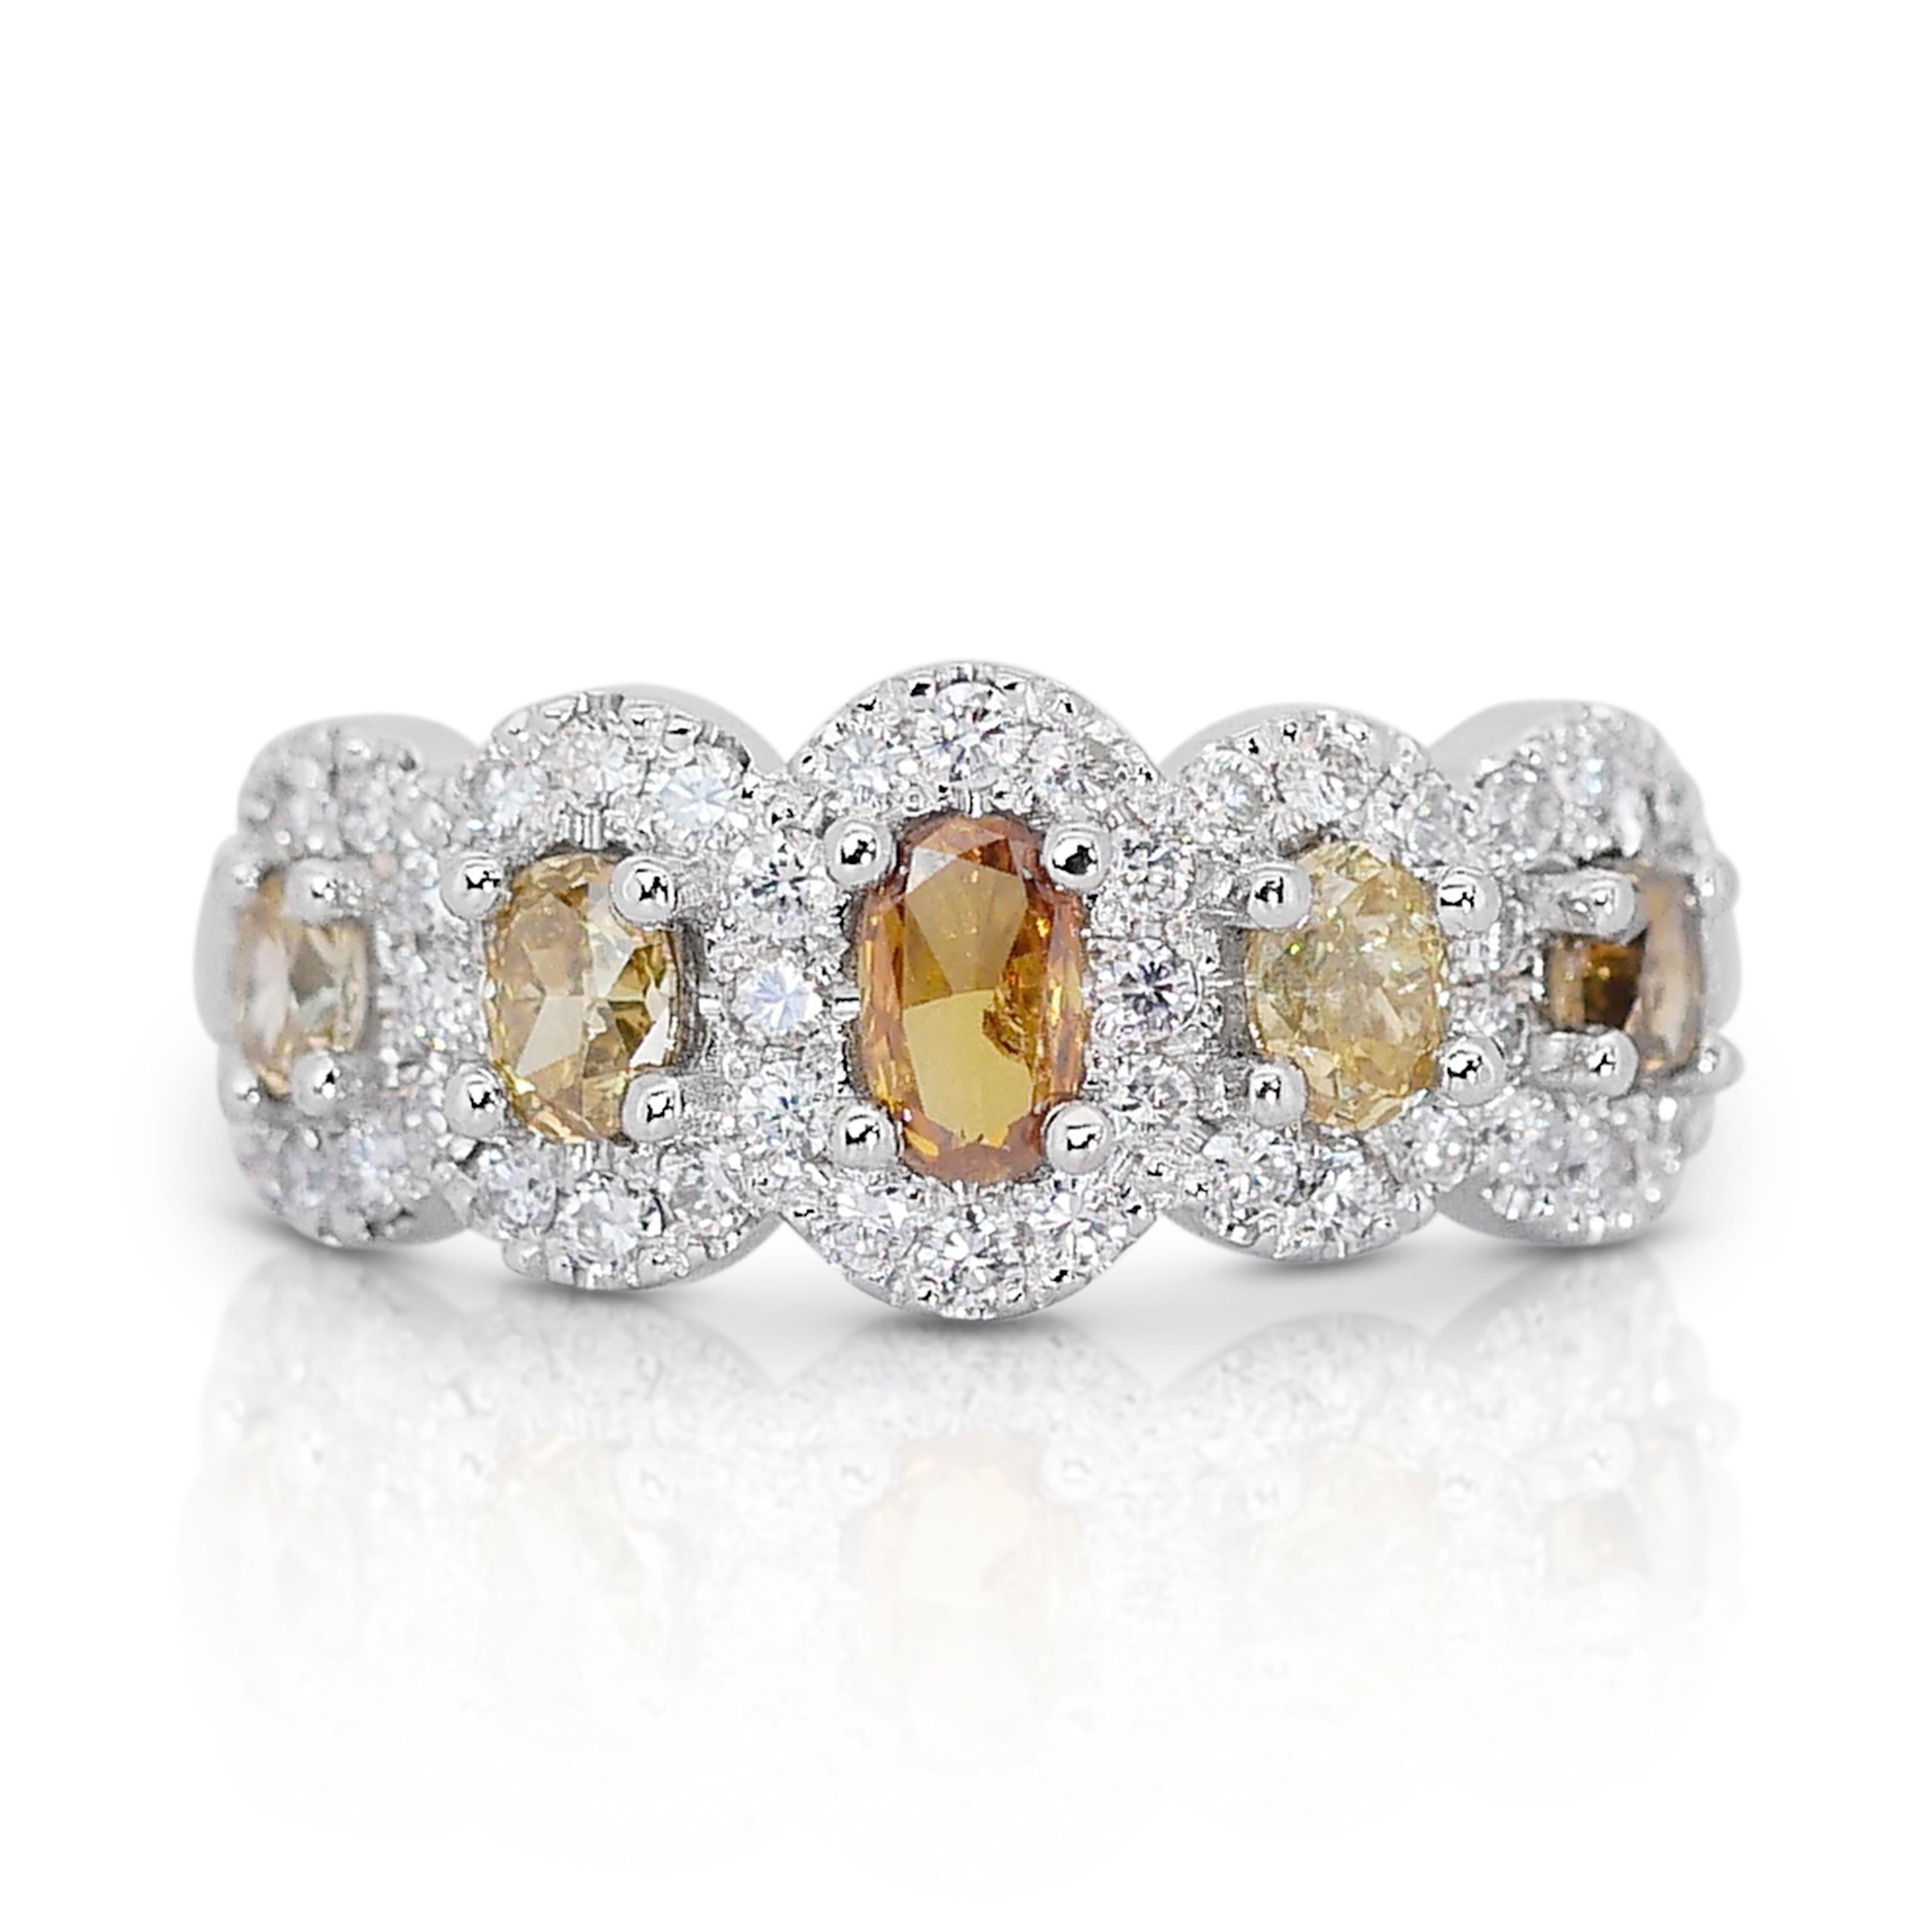 Elegant  Bague en or blanc 14 carats avec diamant de couleur fantaisie de 1,18 carat, certifié IGI

Cette bague en or blanc 14k de couleur fantaisie est une symphonie de couleurs et d'éclat, mettant en vedette une extraordinaire sélection de 5